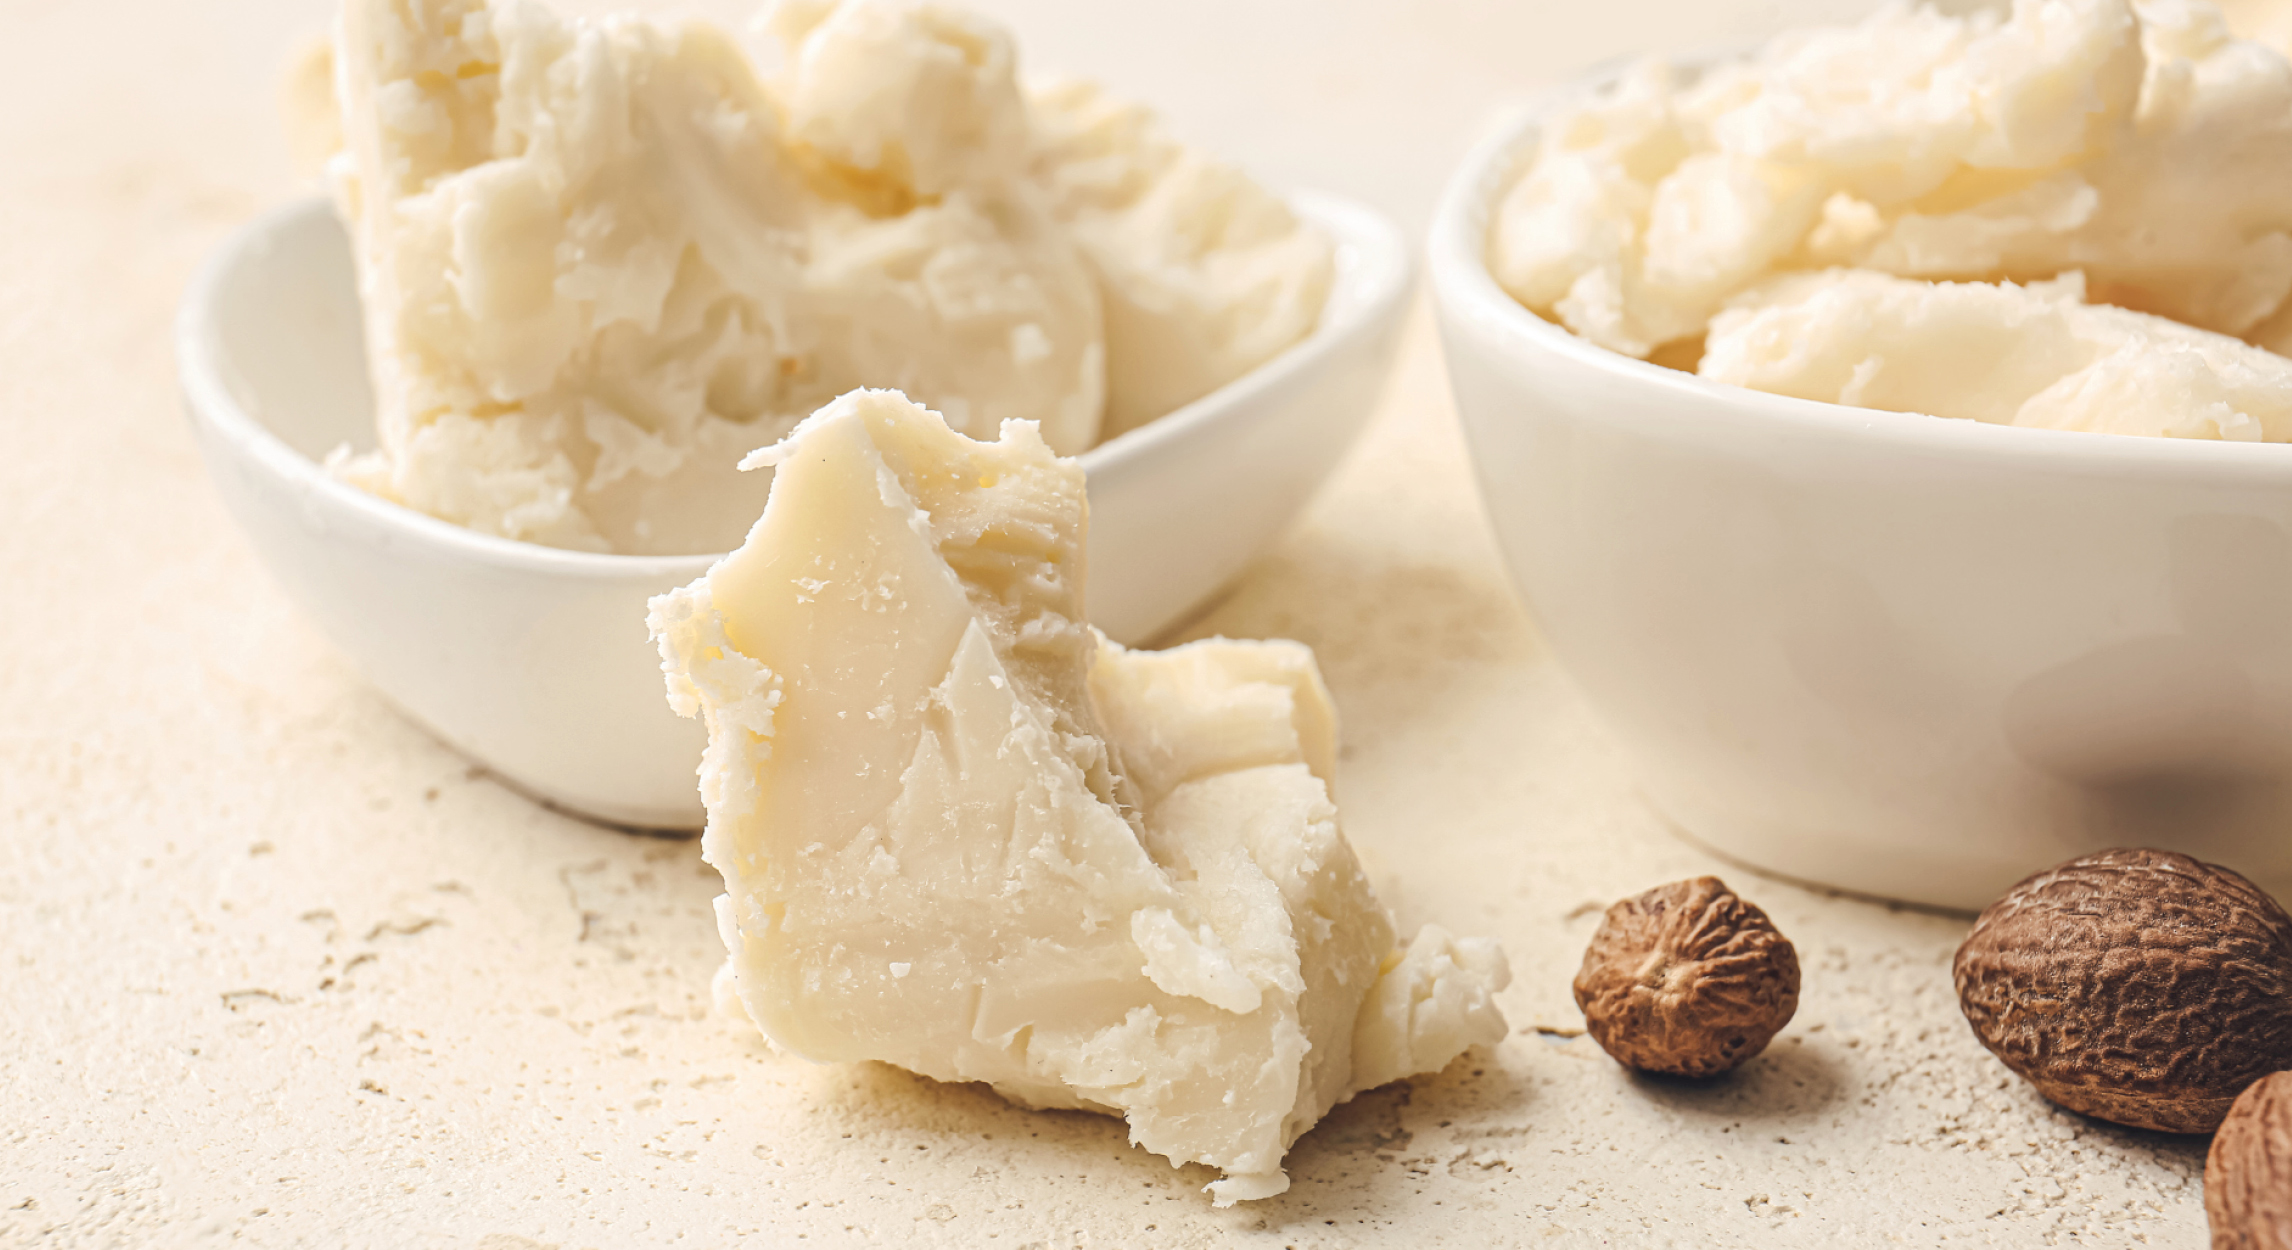 Le beurre de Karité, un trésor aux 1001 bienfaits - Greenweez magazine